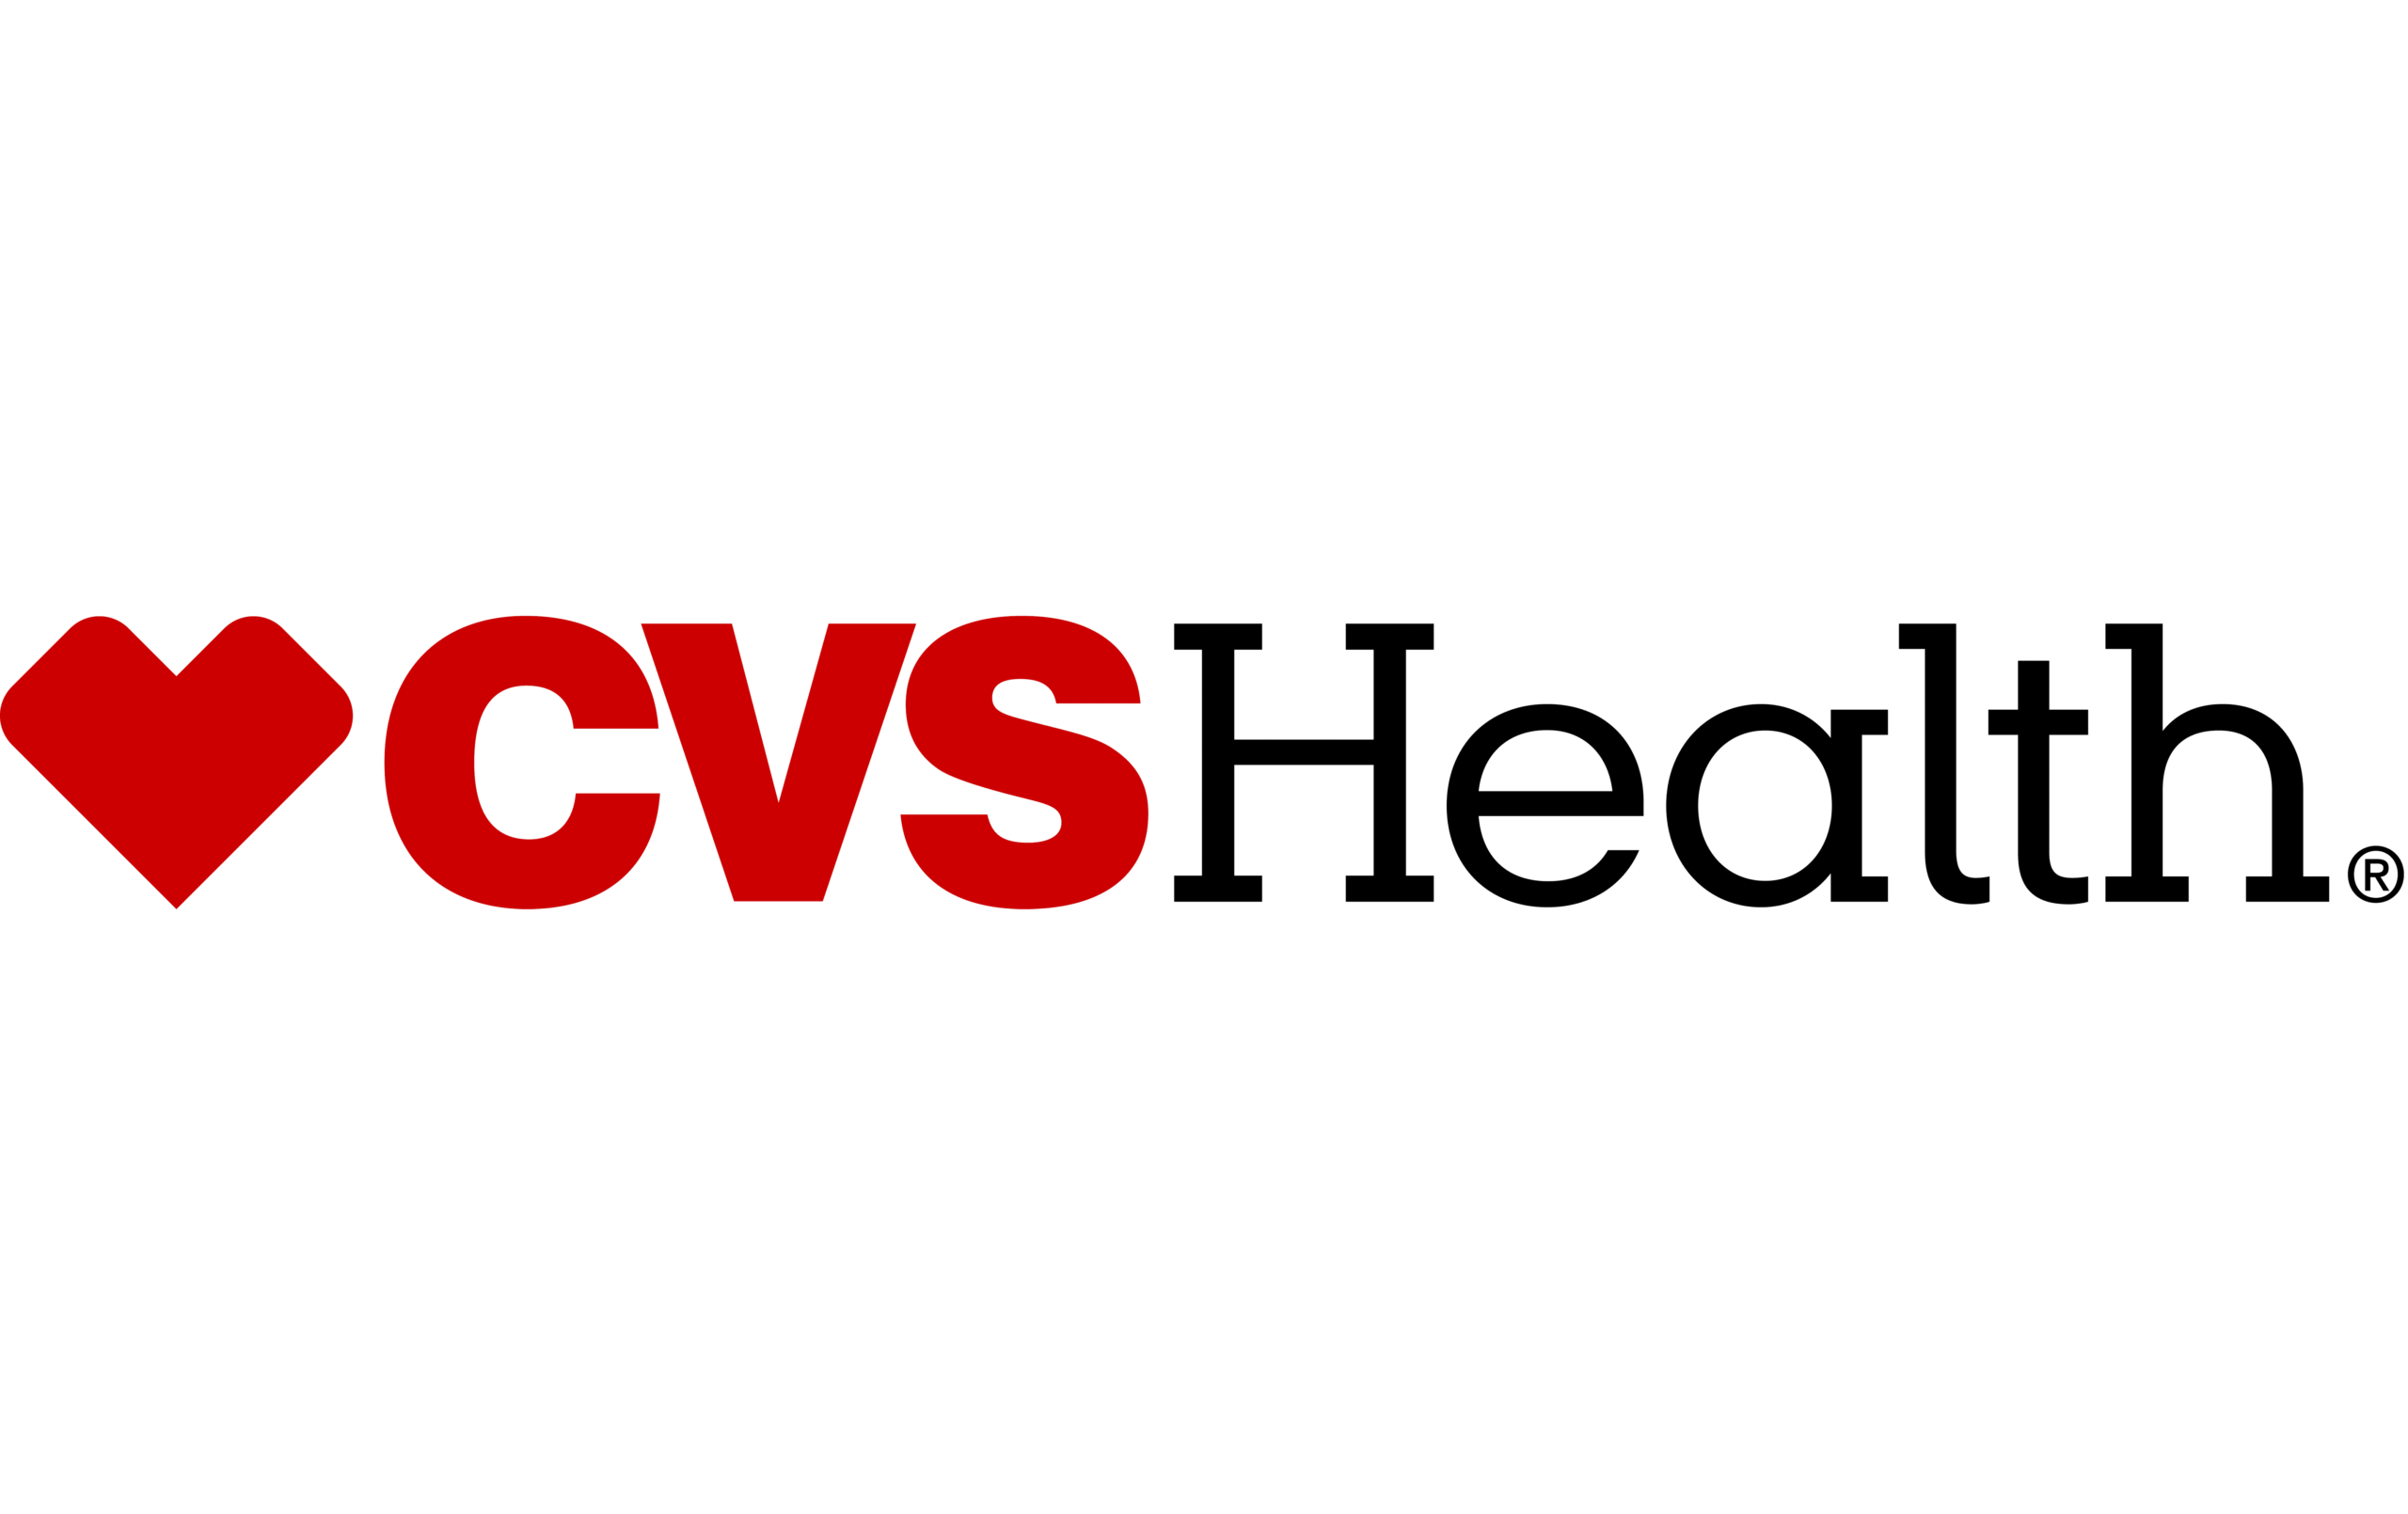 cvs data collection client